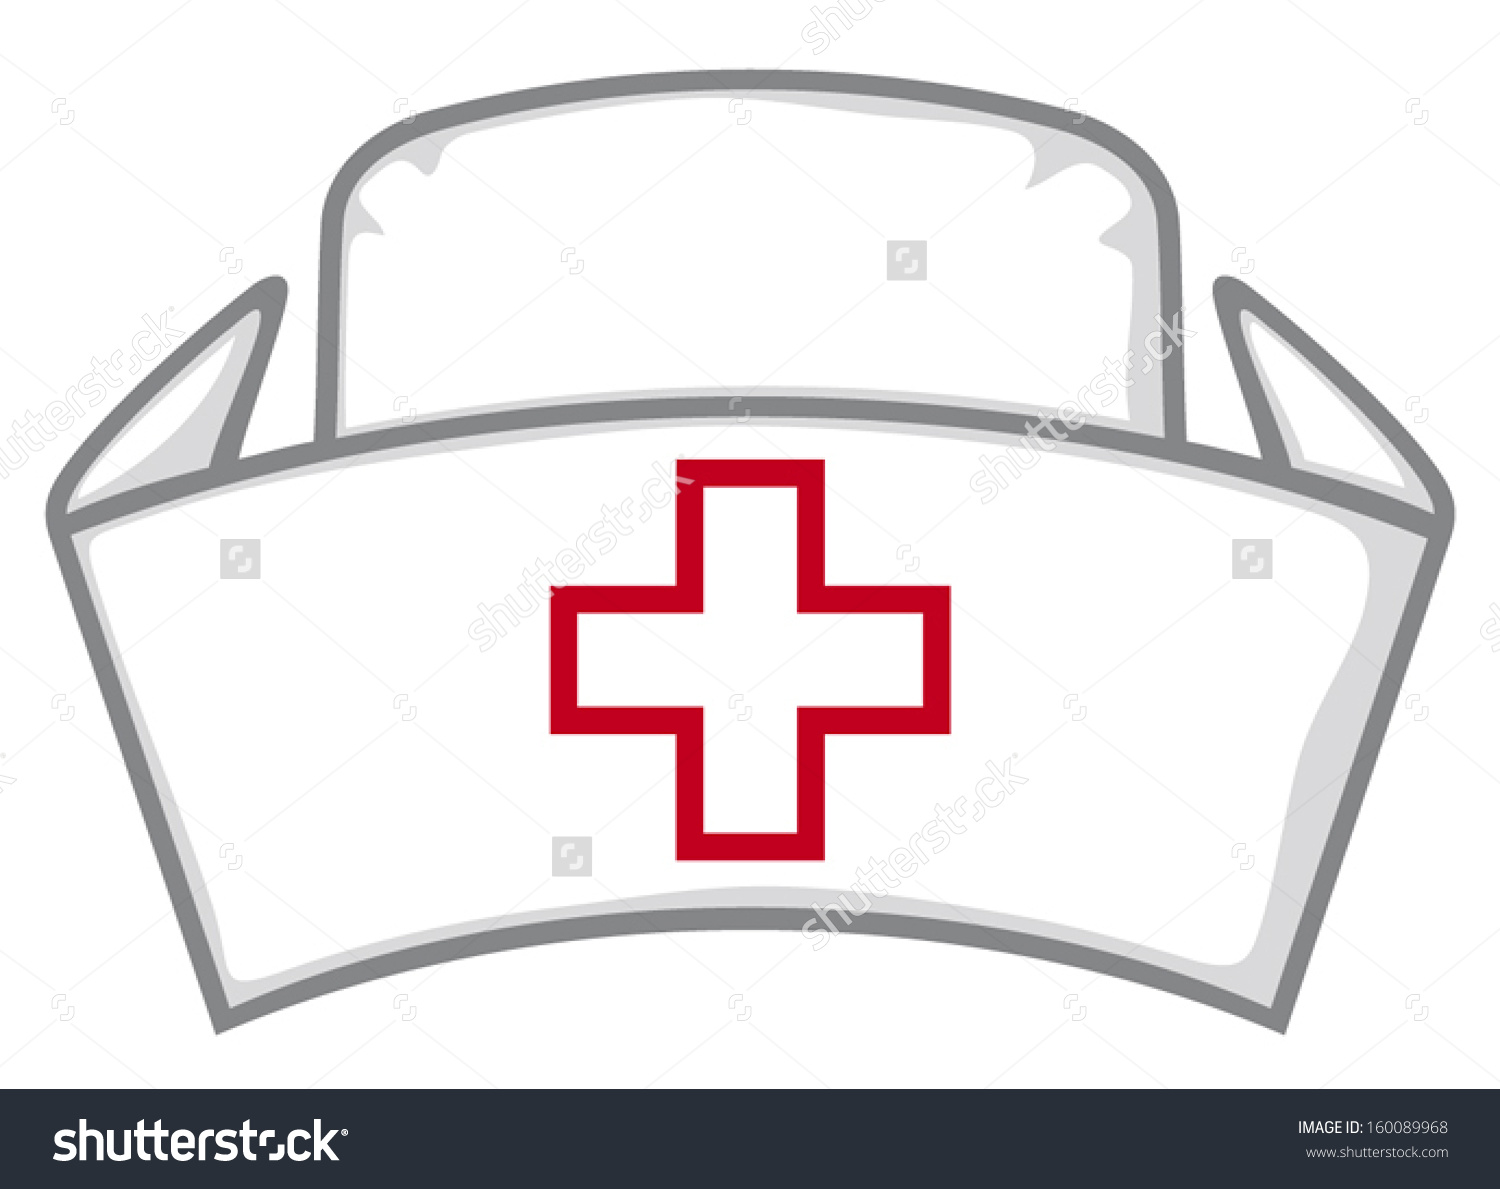 Clipart nurse hat - ClipartFest